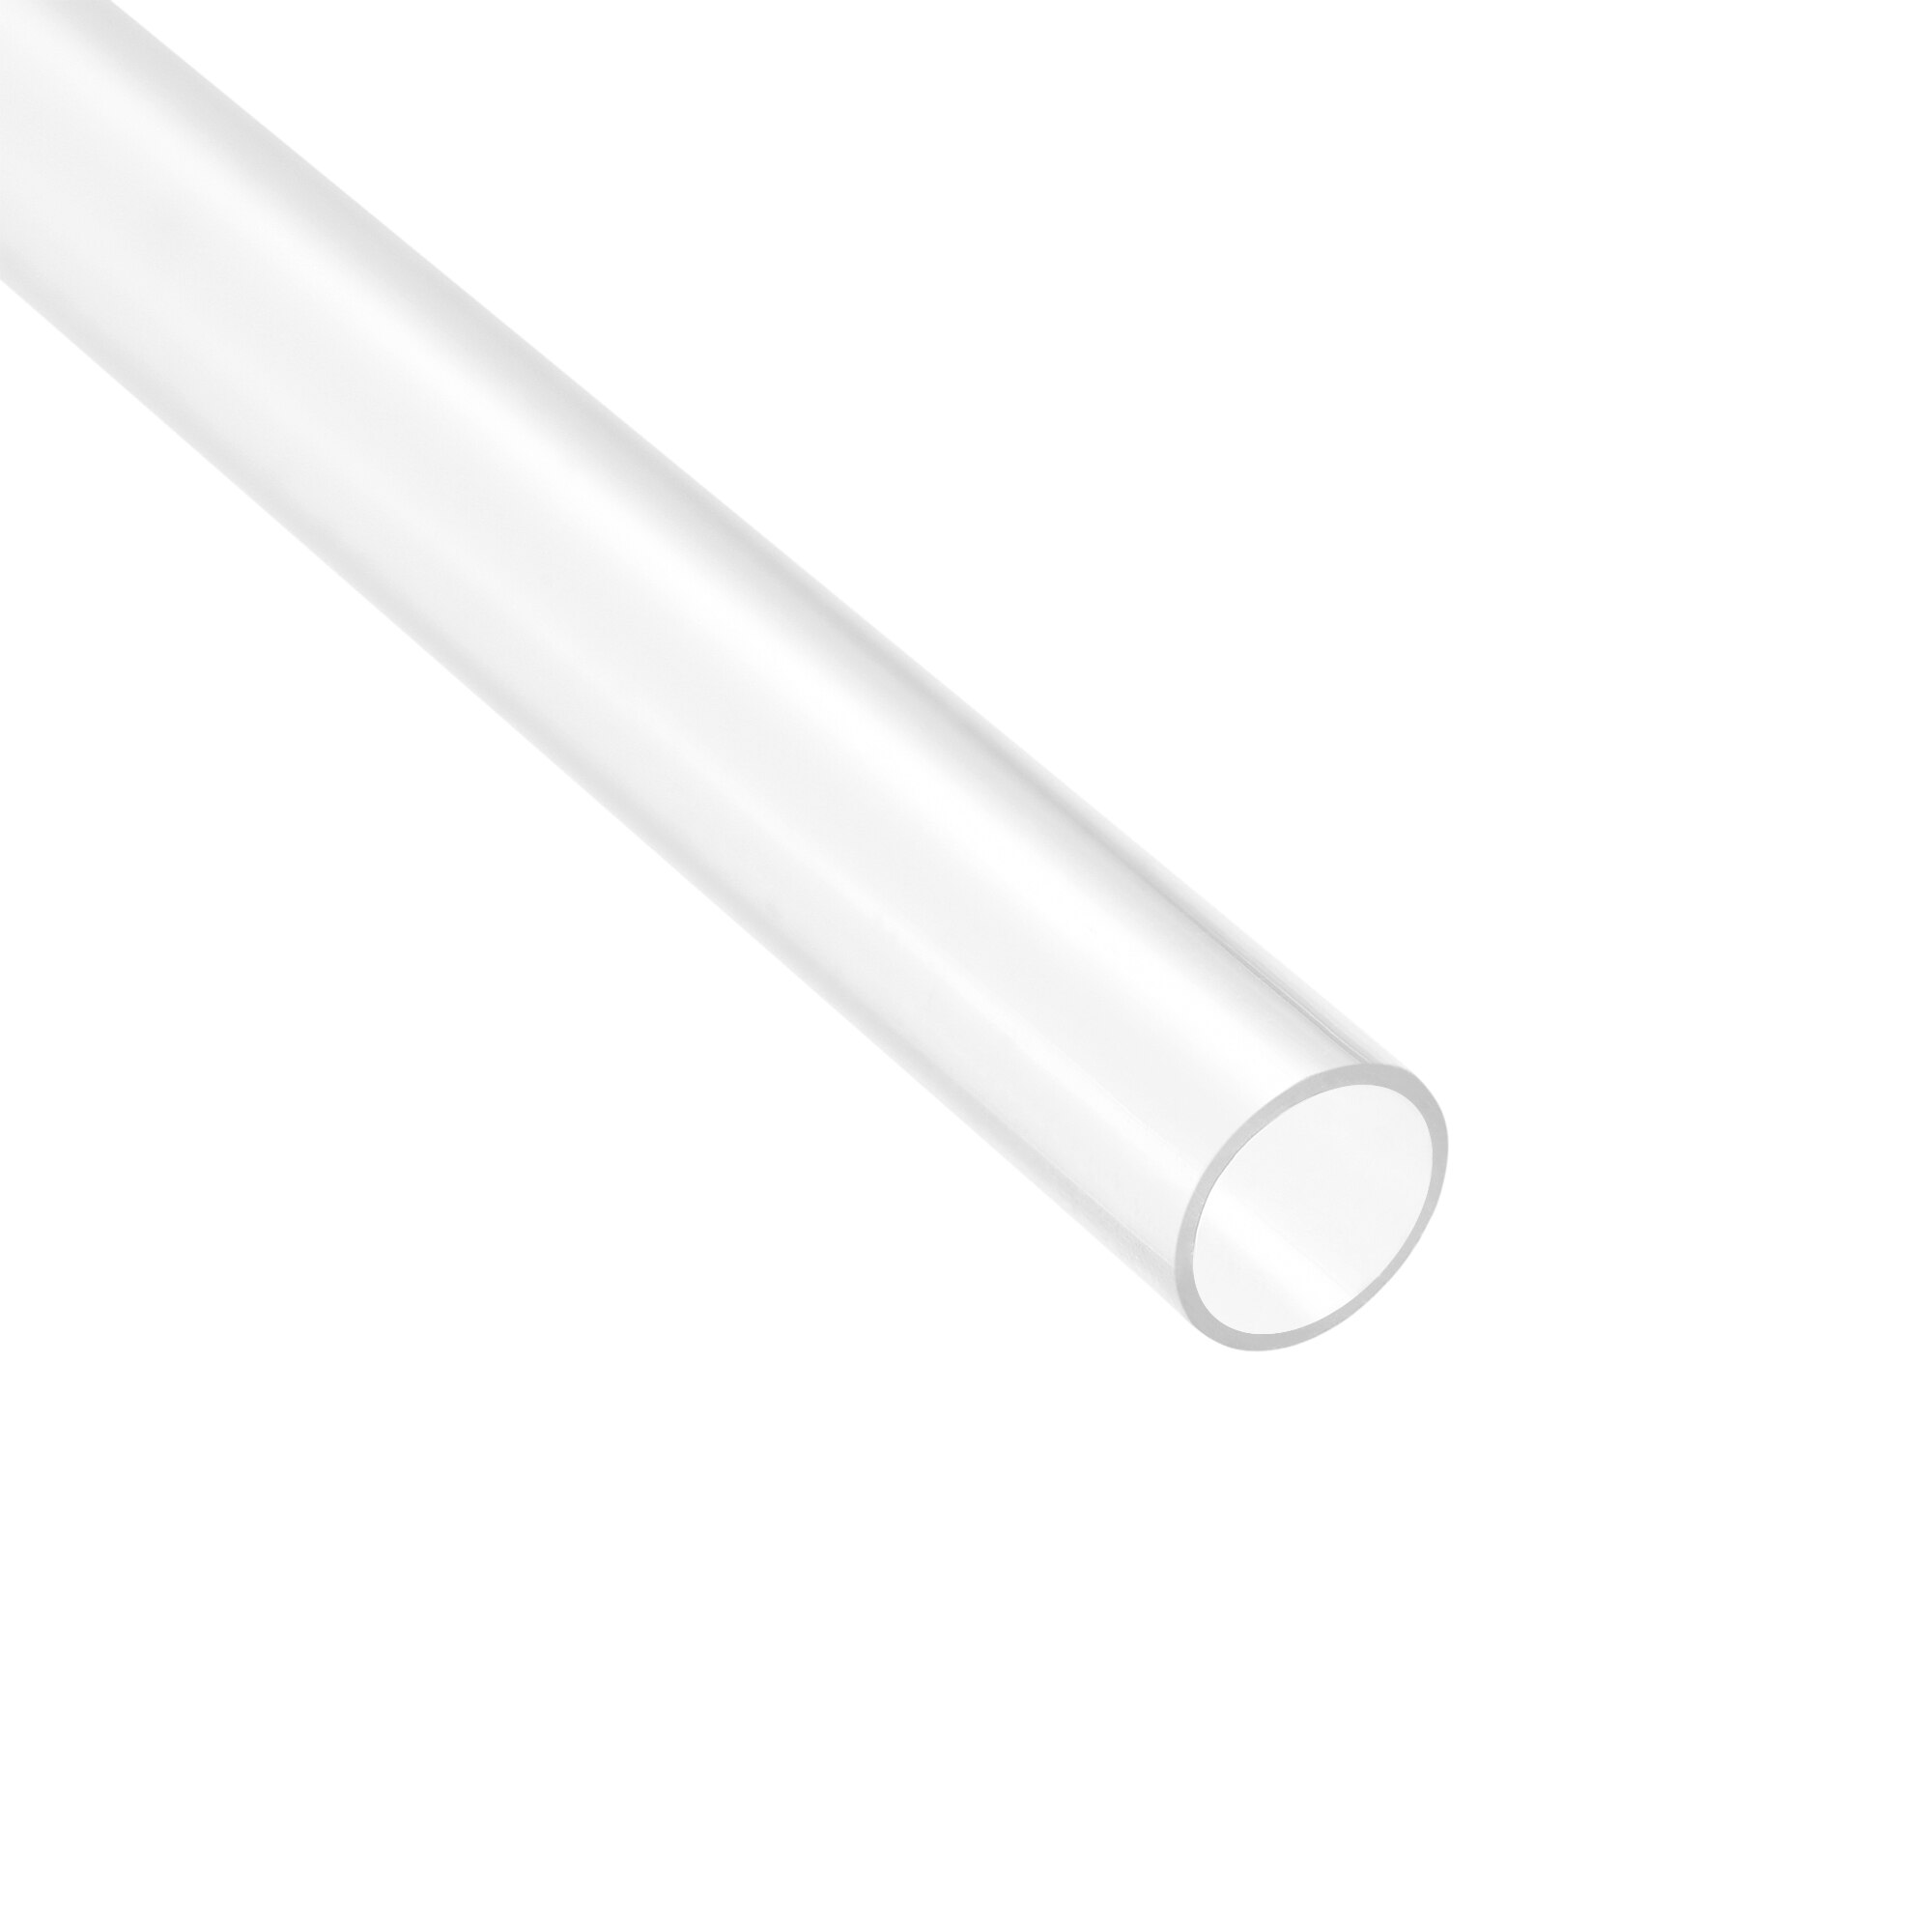 Uxcell polycarbonat stivt rundt rør 305mm(1ft)  længde plastrør 4mm-47mm id